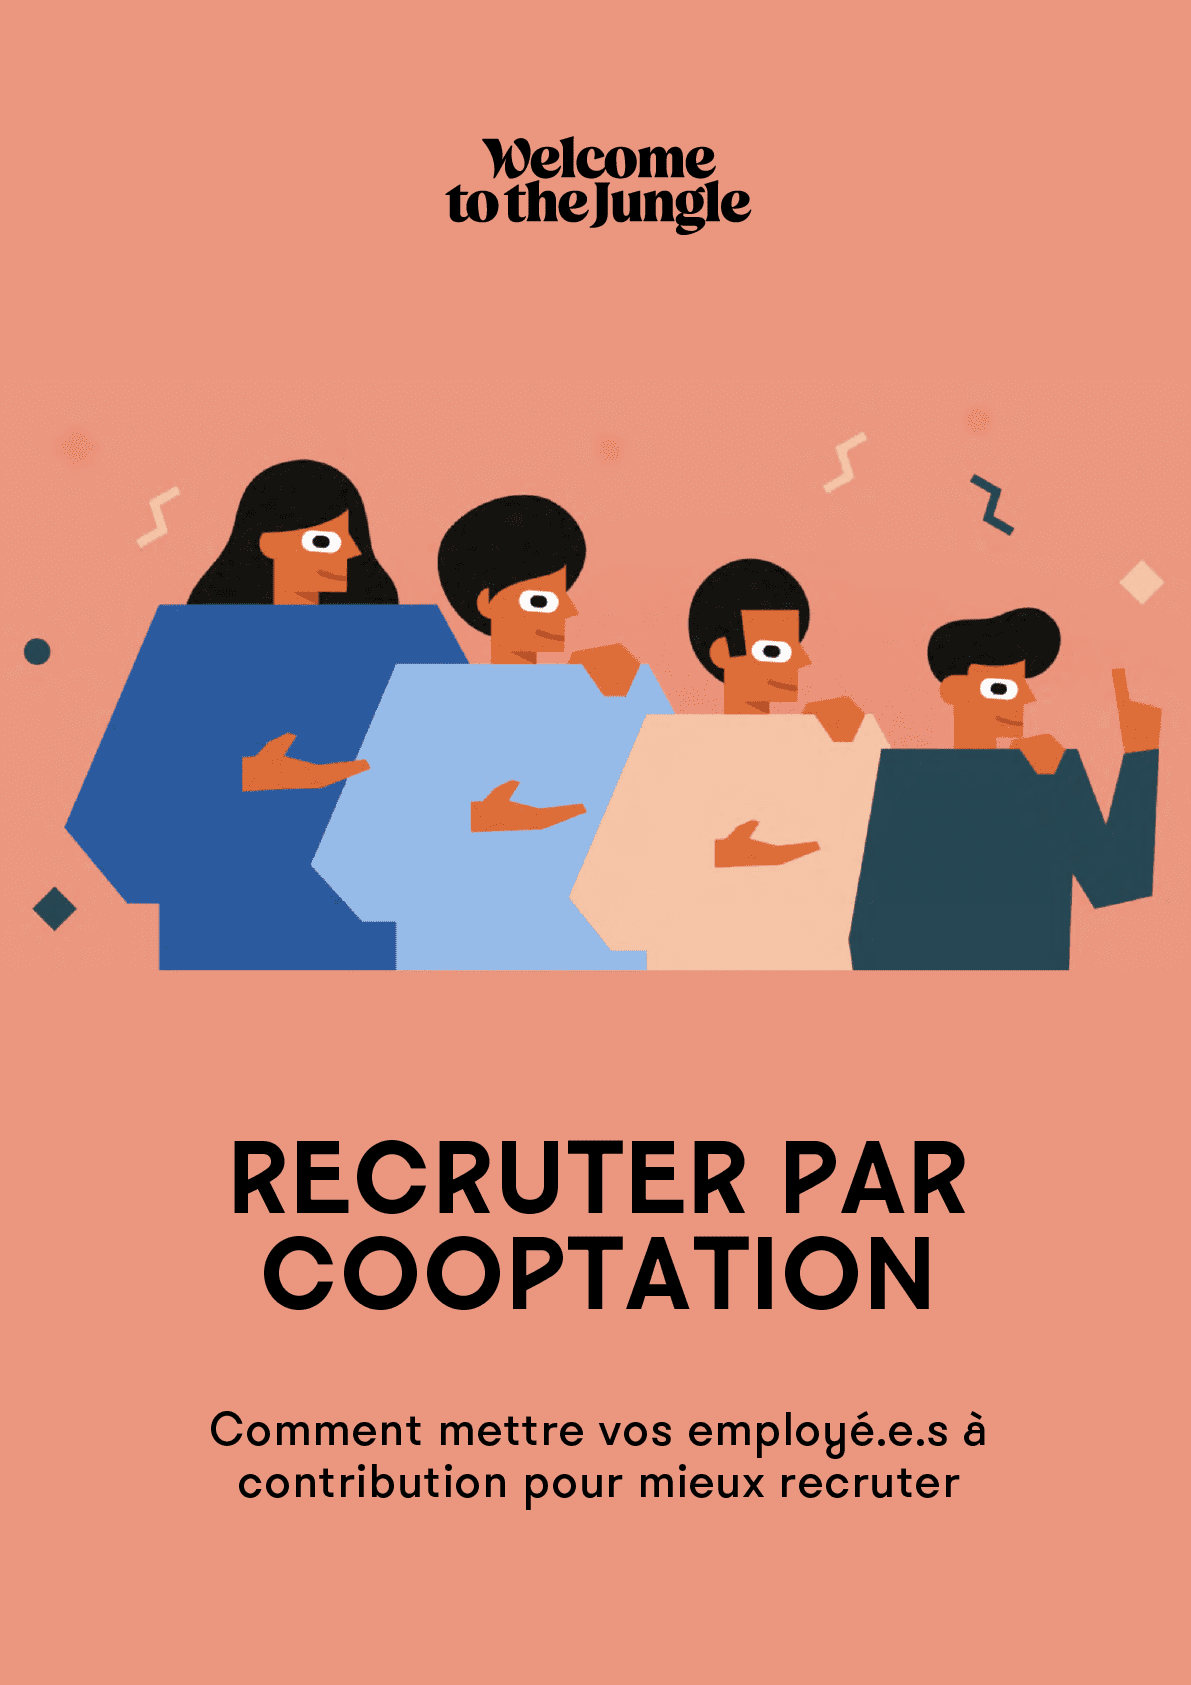 Recruter par cooptation : comment mettre vos employé.e.s à contribution ?